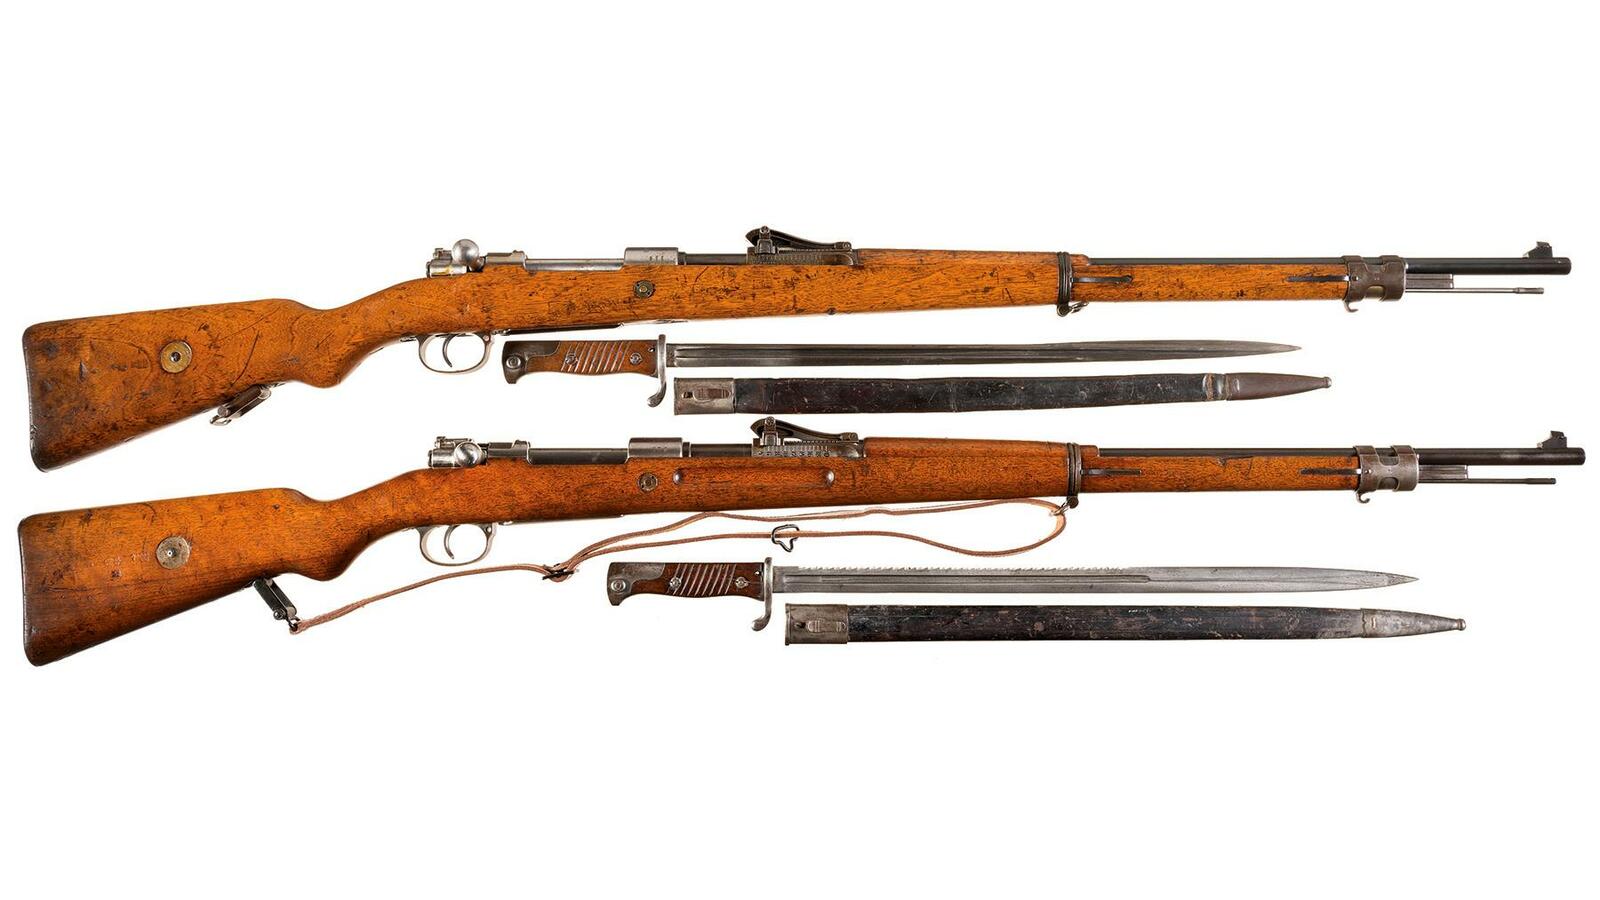 mauser gewehr 98 with bayonet